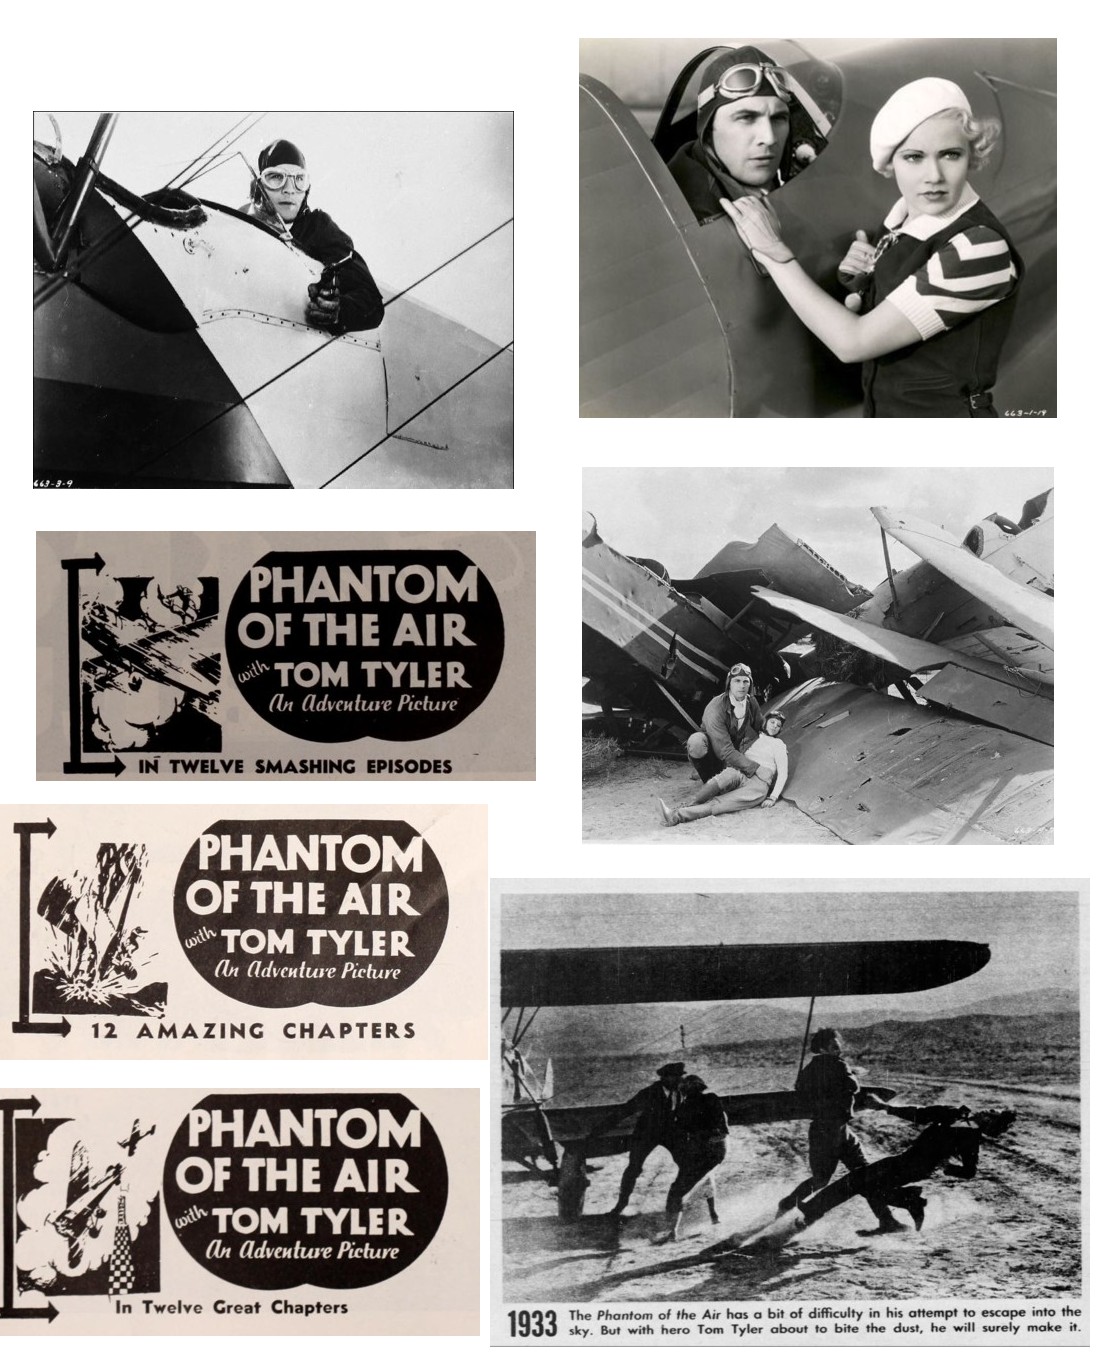 The Phantom of the Air film reviews cinema ads